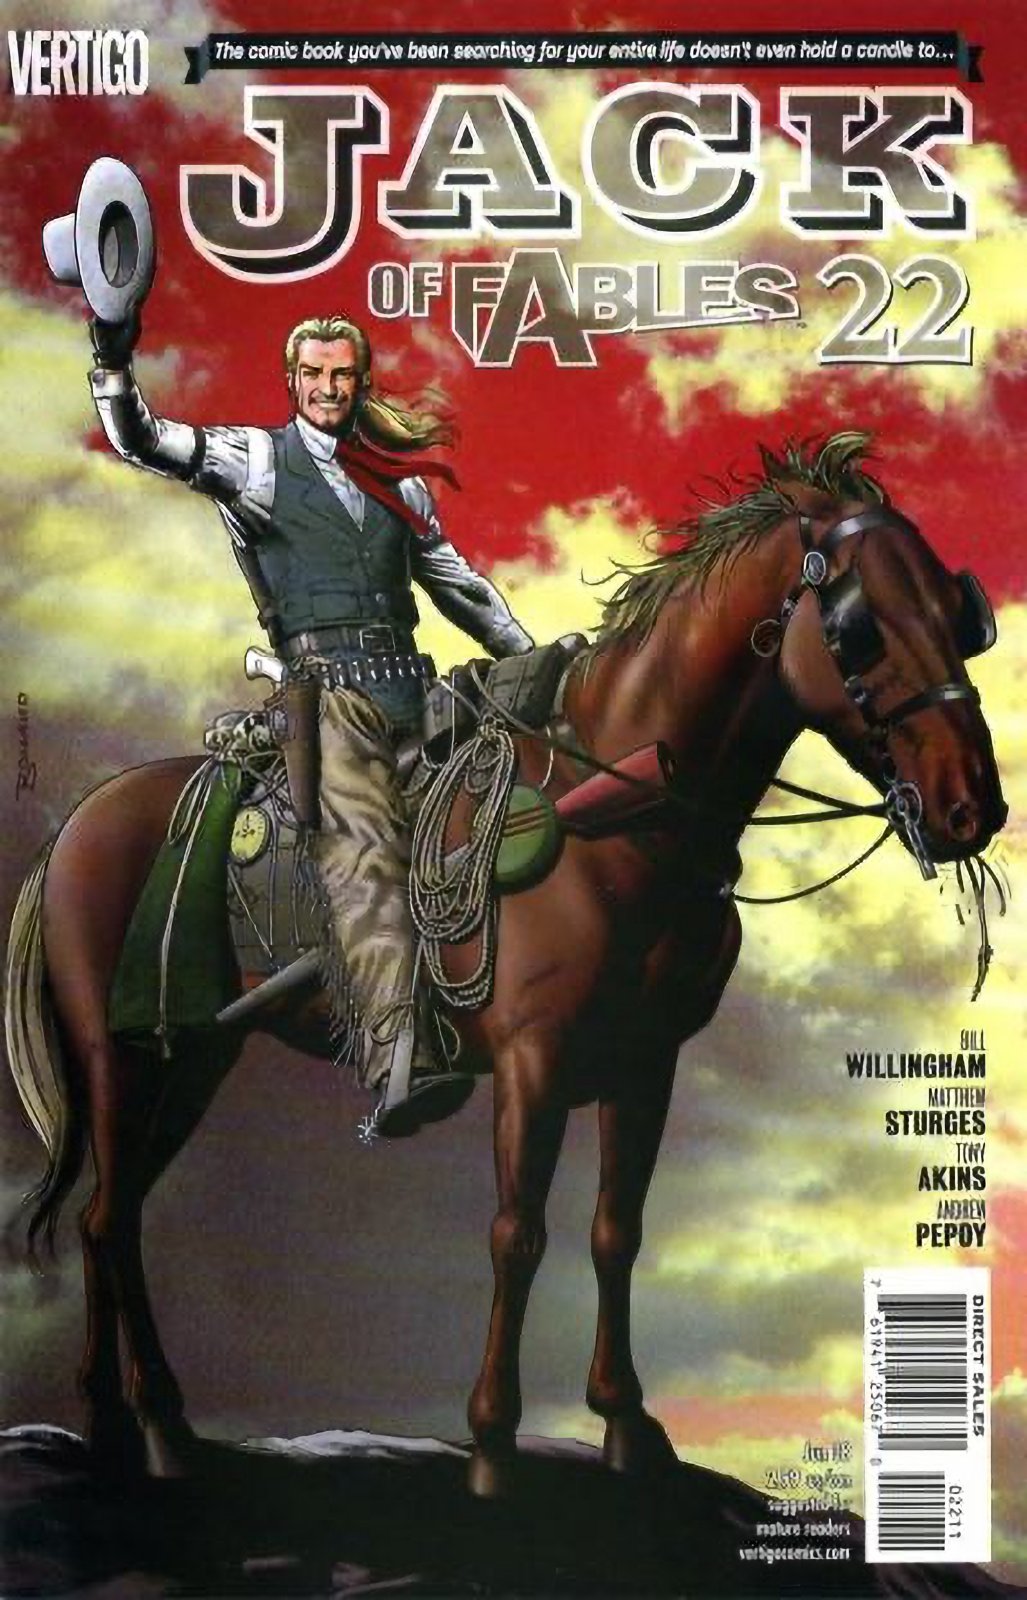 Jack of Fables #22 (2006-2011) Vertigo Comics